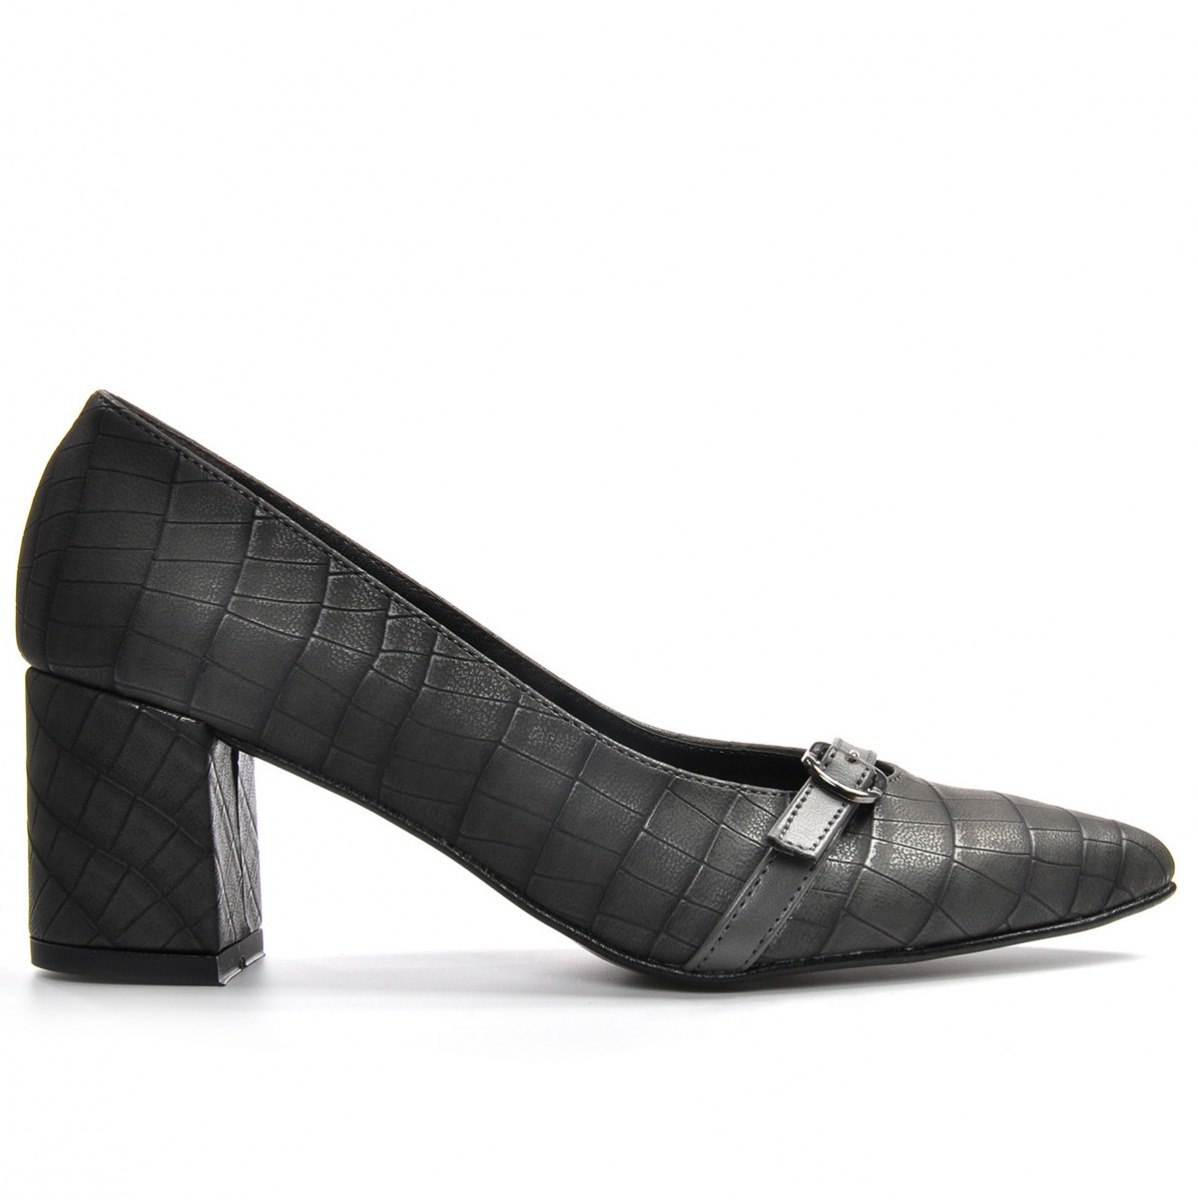 Flo Kadın  Gri-Kroko Klasik Topuklu Ayakkabı VZN19-110K. 2